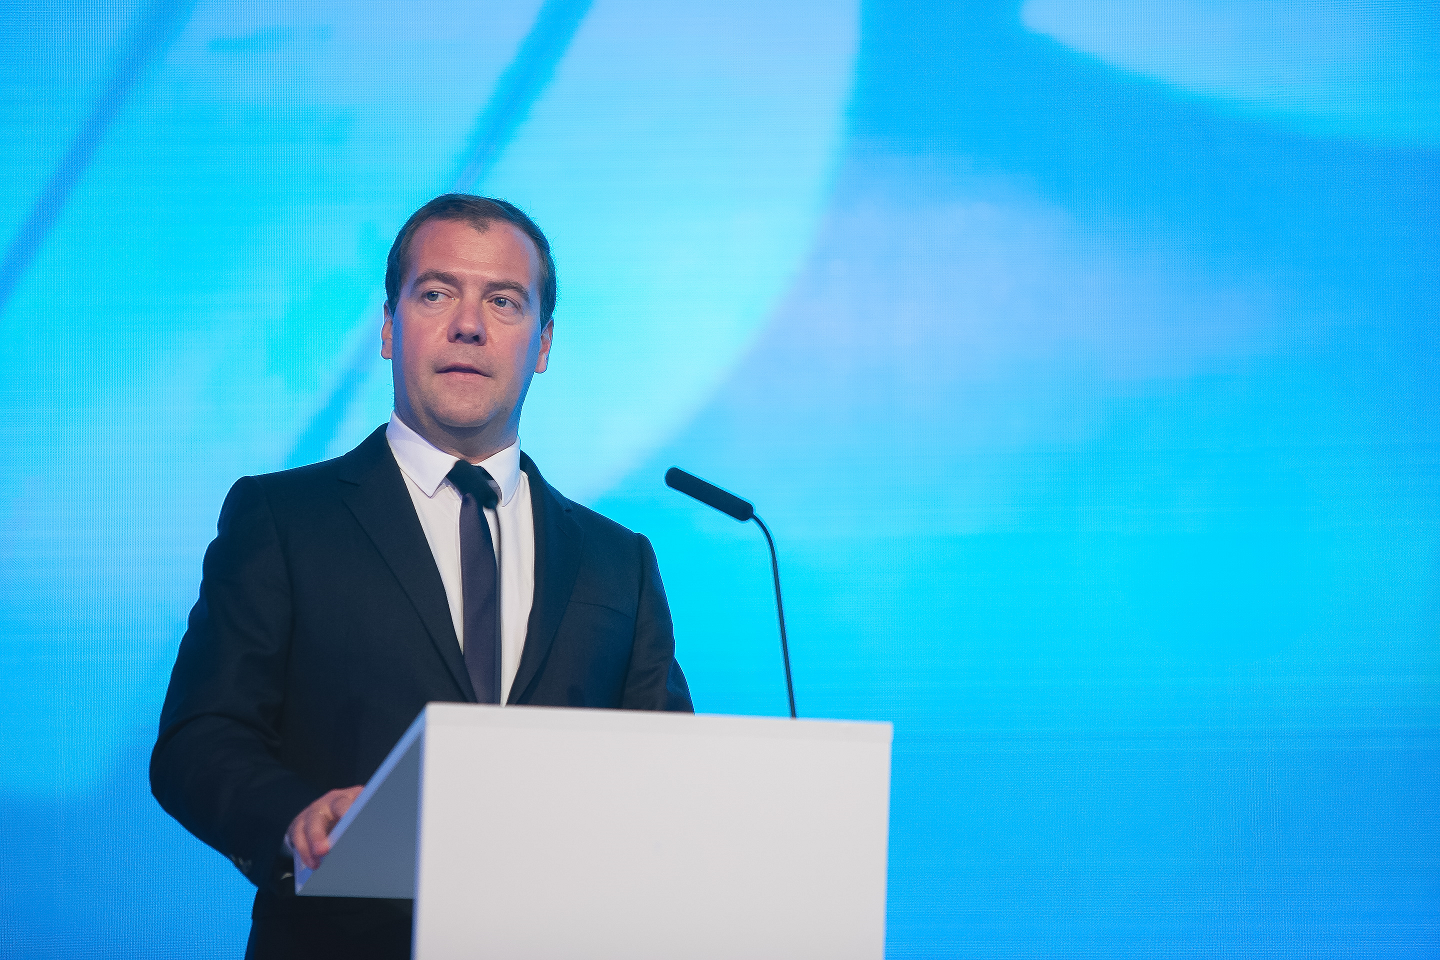 Medvegyev esélyt lát az orosz-ukrán viszony javítására